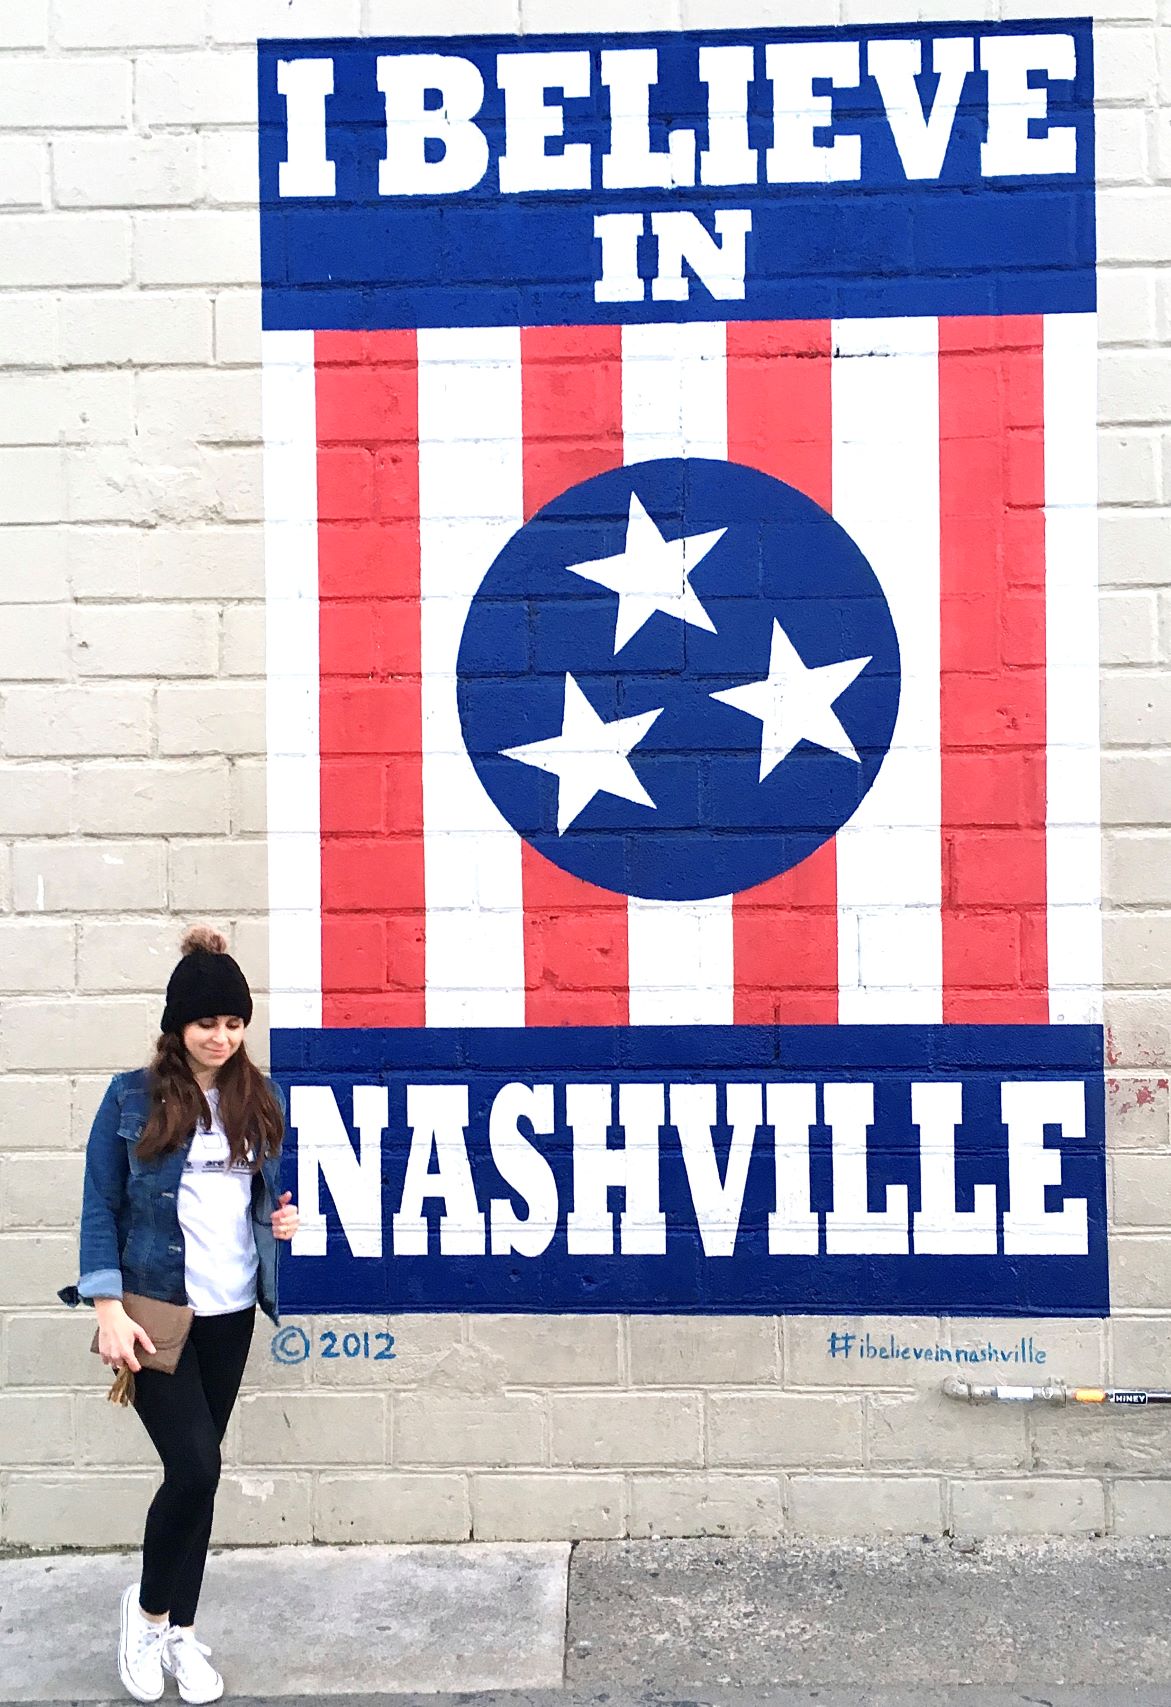 I Believe in Nashville mural